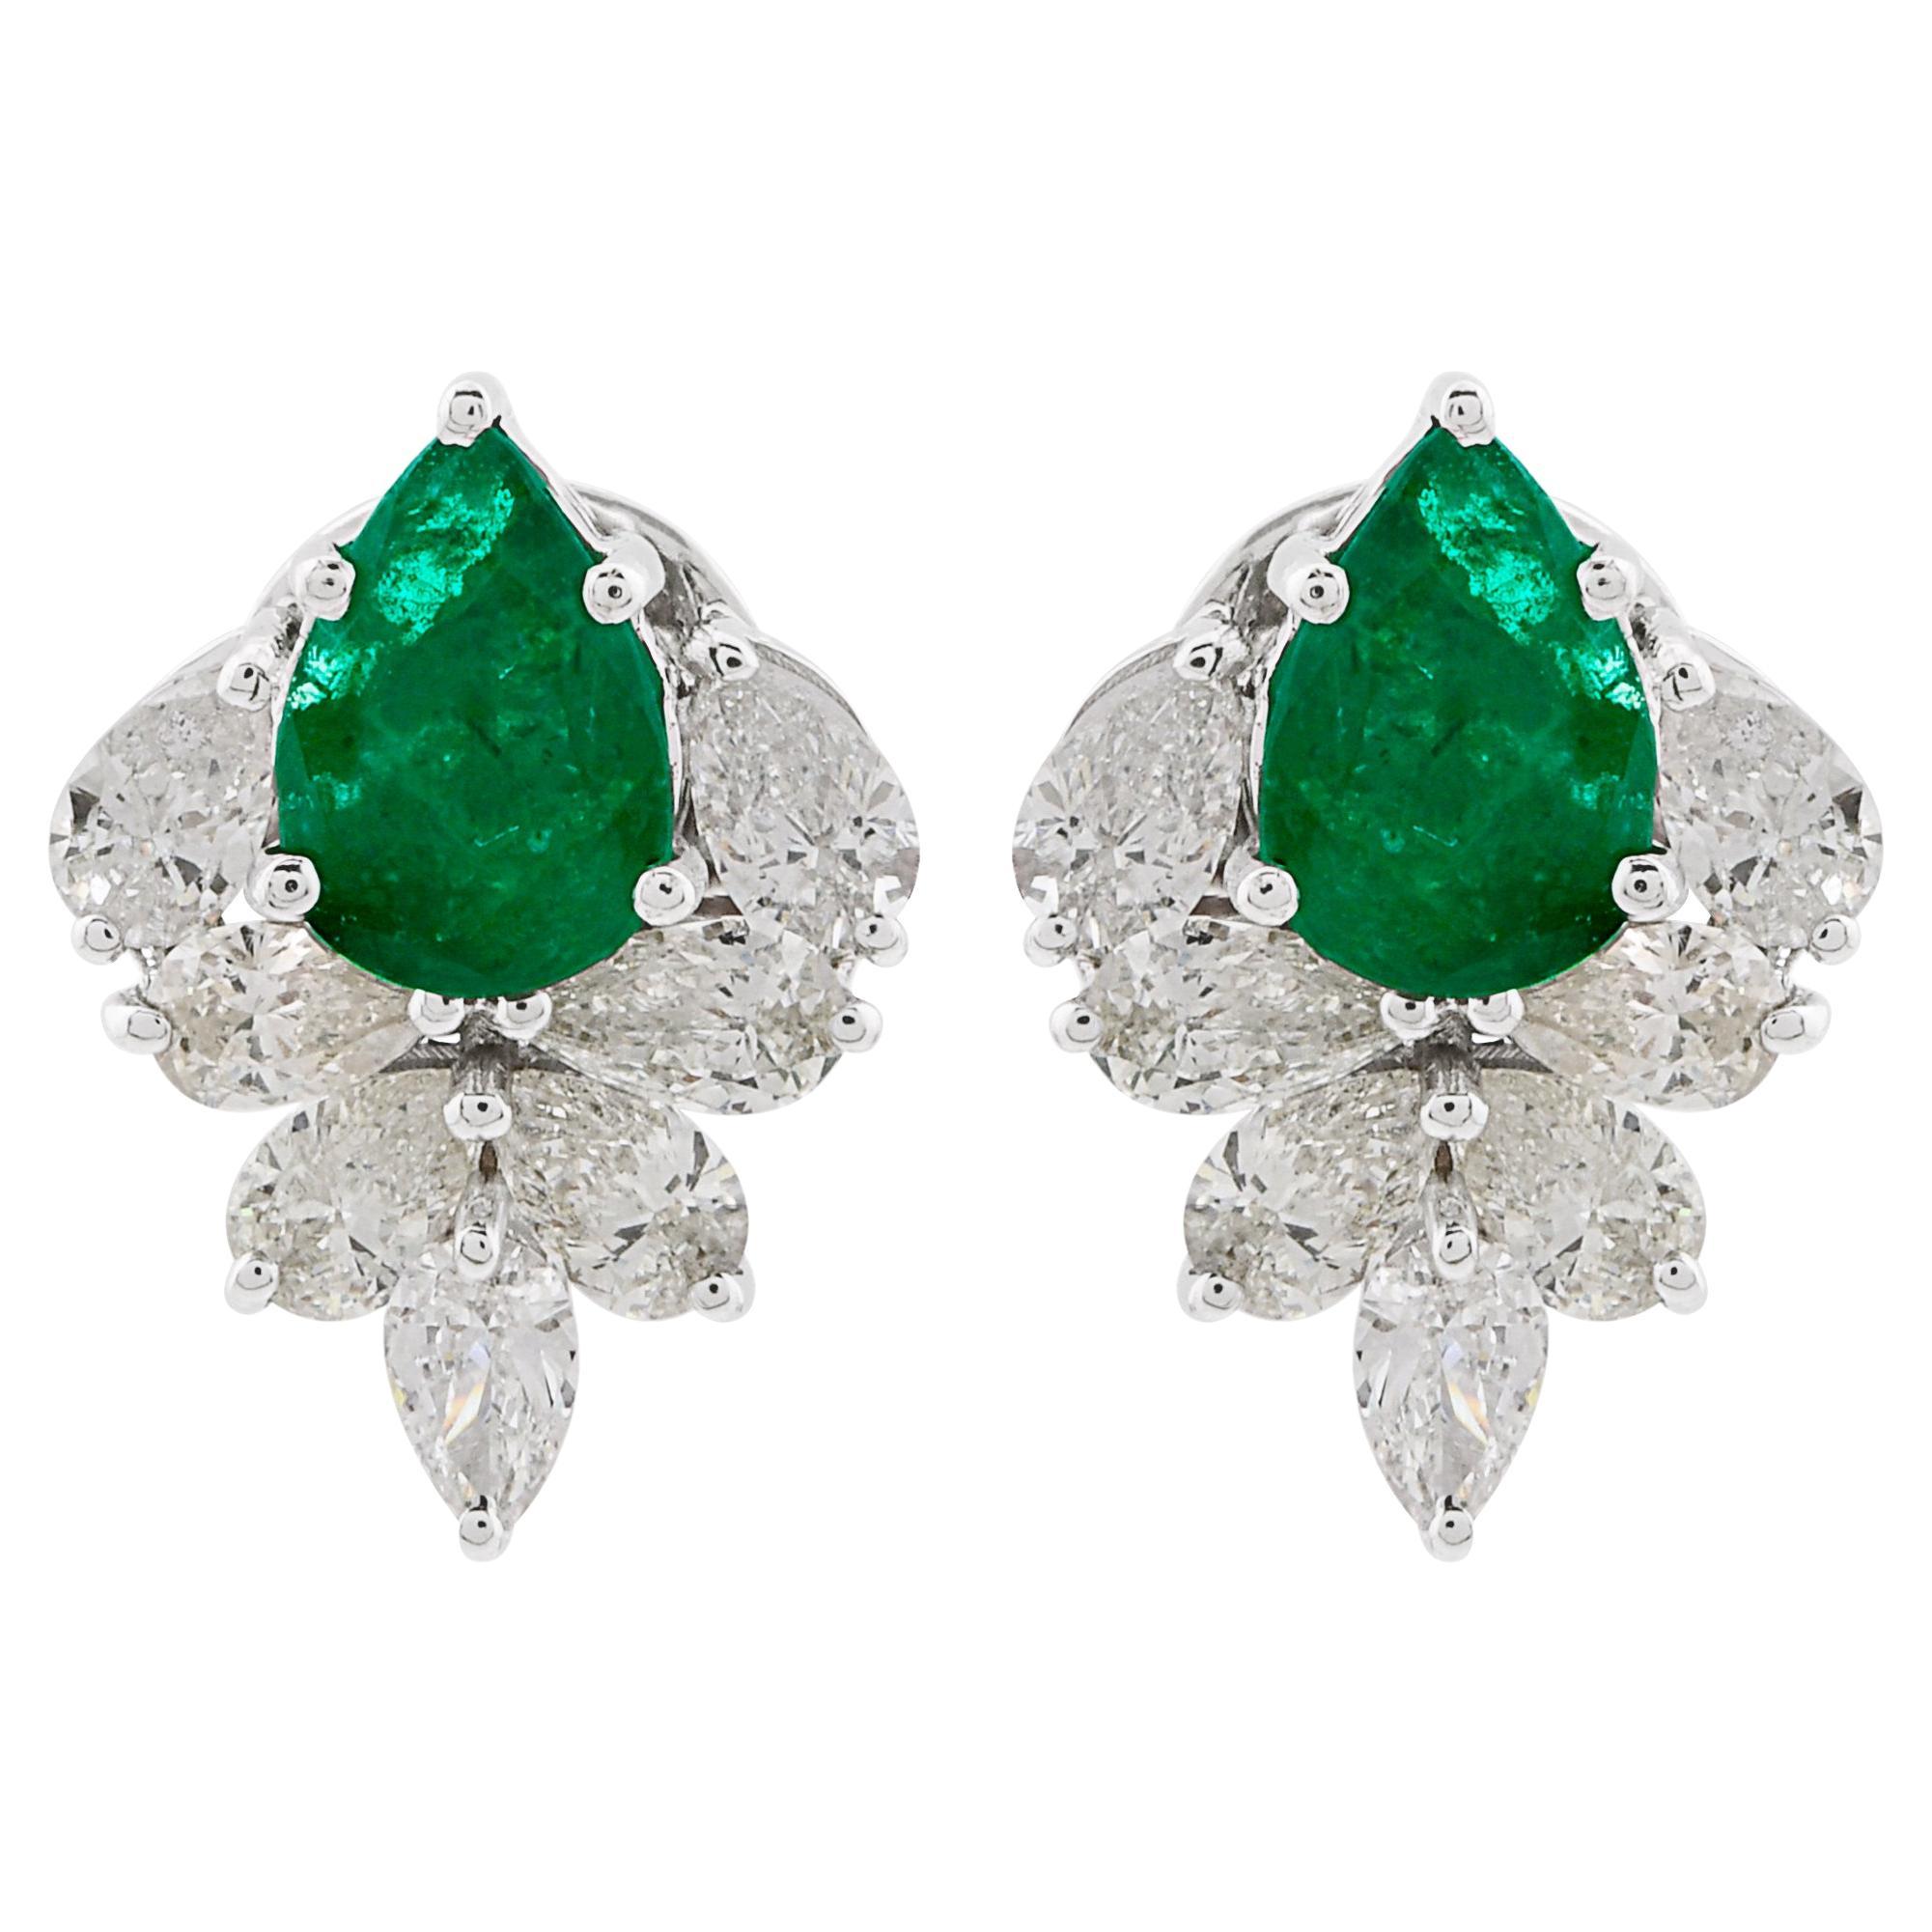 2.69 Carat Zambian Emerald with 3.46 Diamond Earrings in 18 Karat White ...